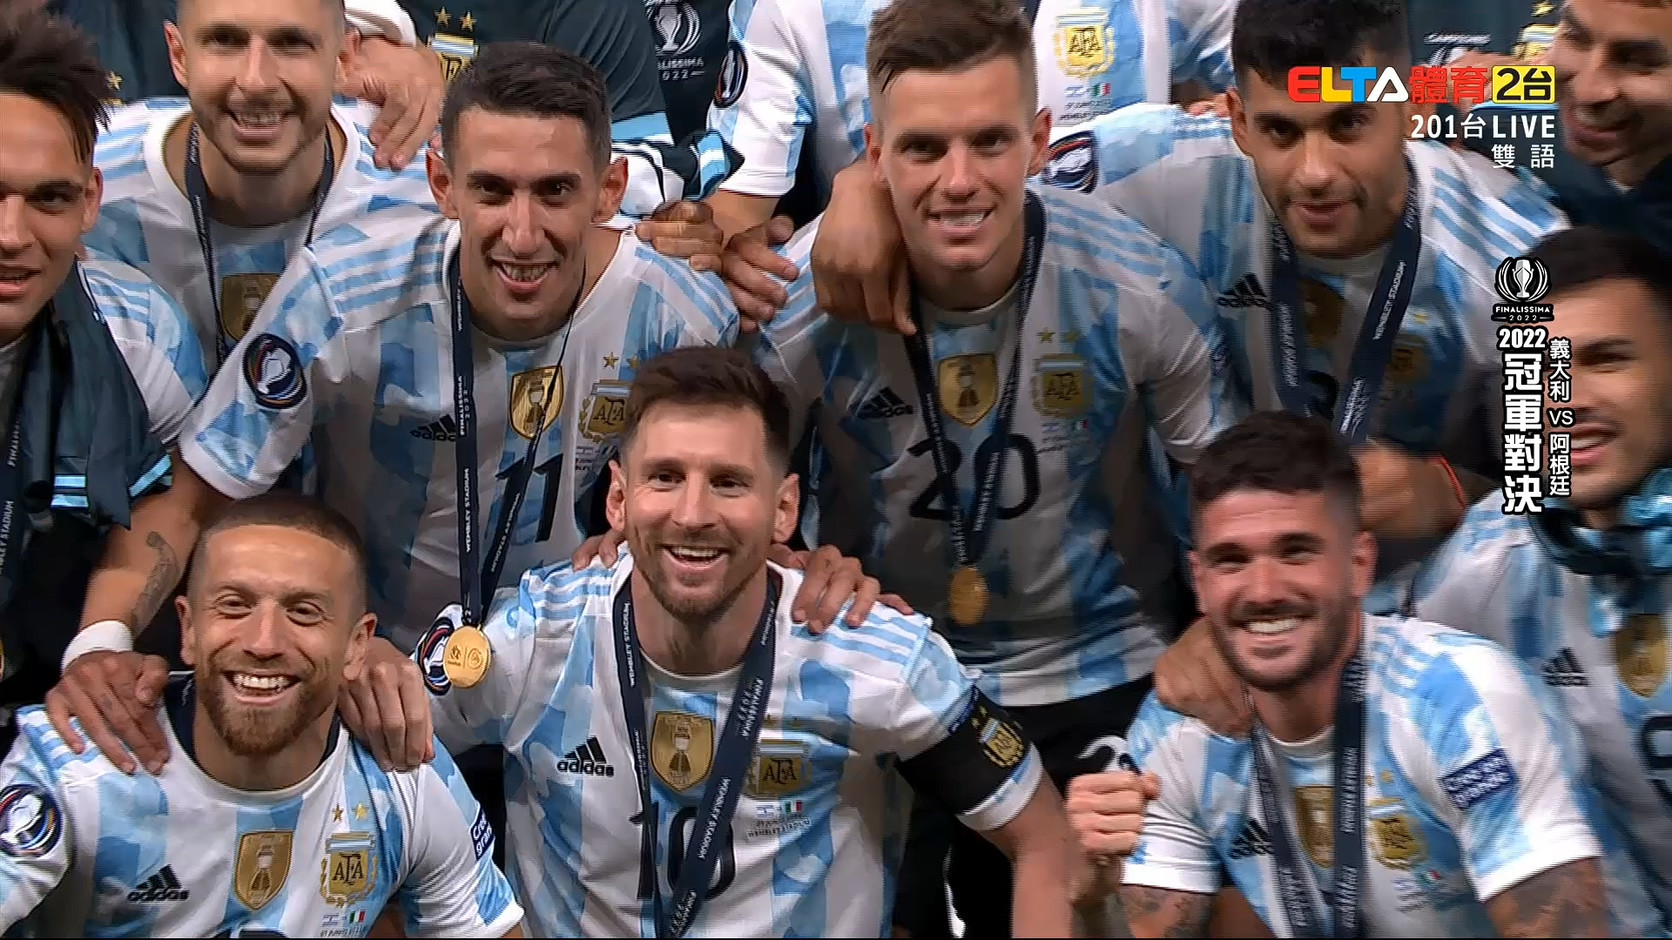 2022冠軍對決 義大利vs阿根廷